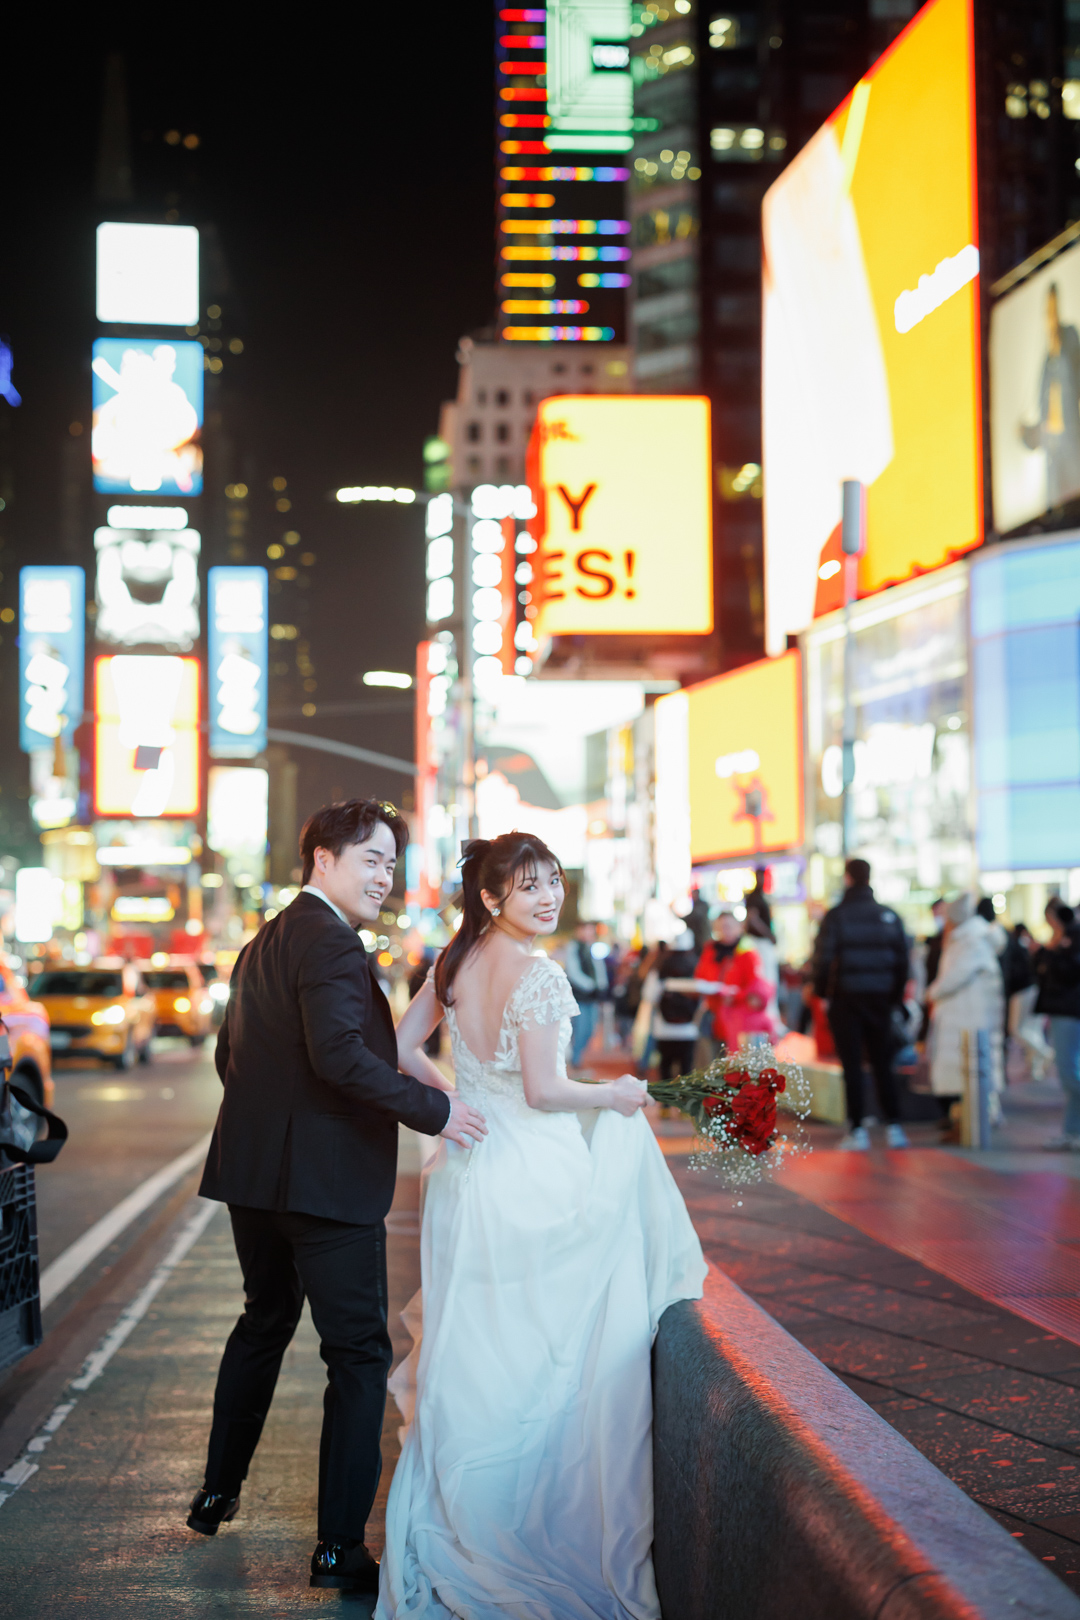 アメリカニューヨークの前撮り/フォトウェディング/タイムズスクエアのネオンサインに照らされる花嫁と花婿。